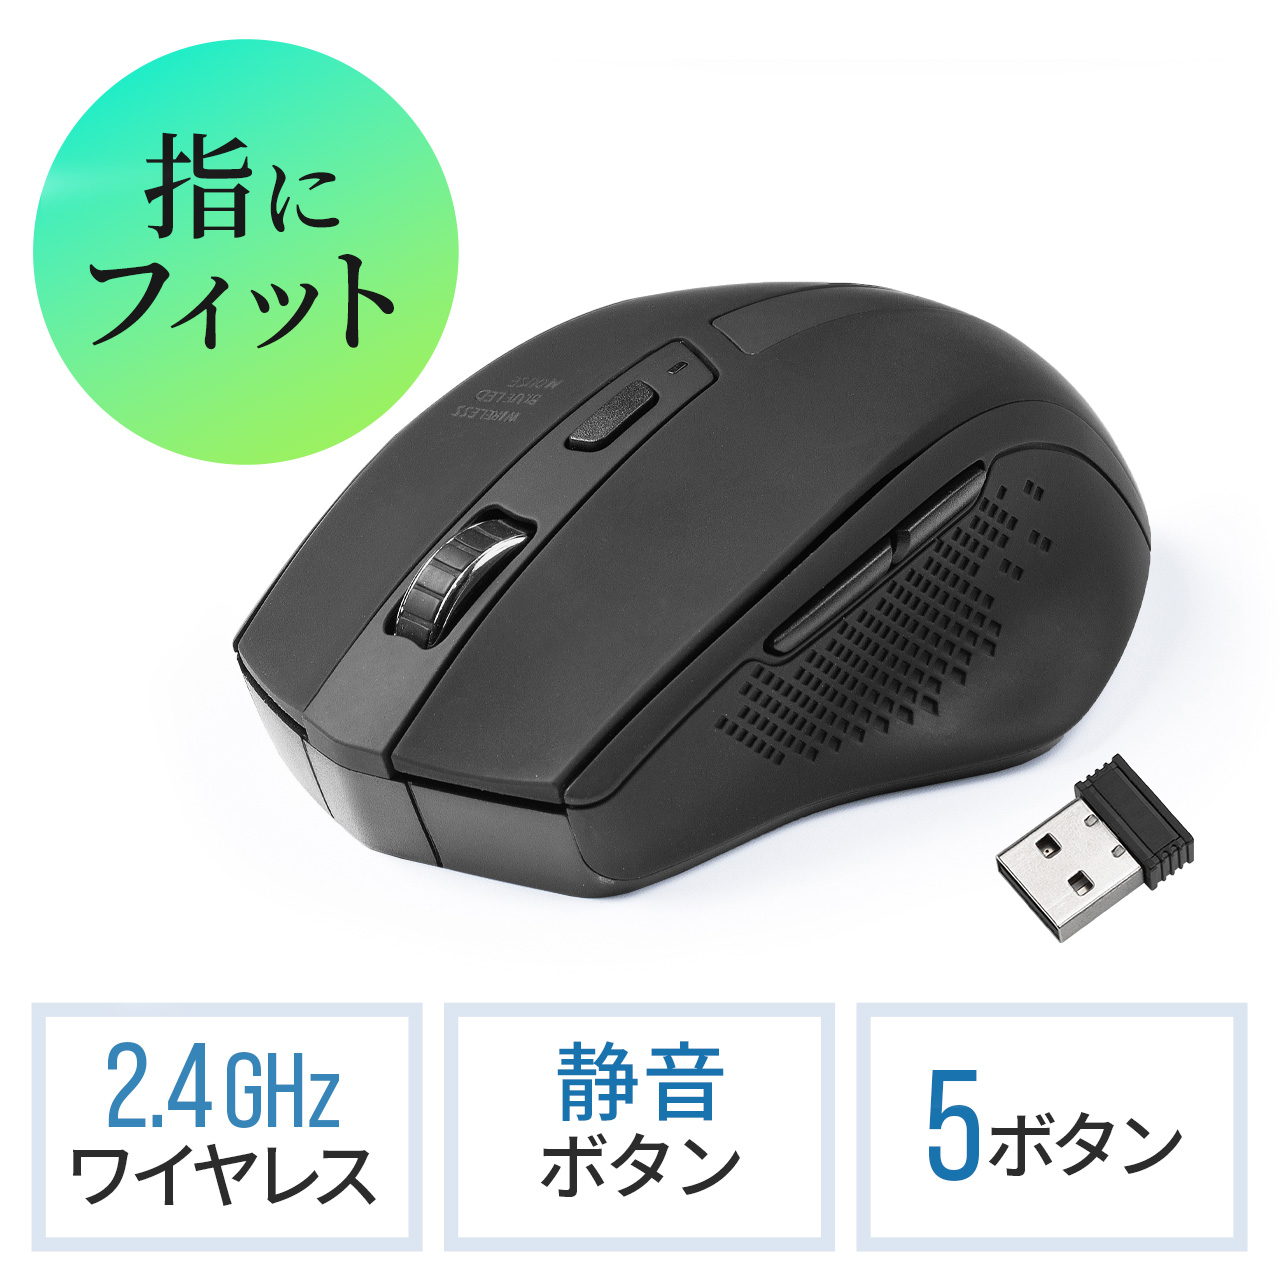 ワイヤレスマウス 5ボタン 全ボタン静音 1000/1600カウント ブラック 400-MAW154BKの販売商品 通販ならサンワダイレクト